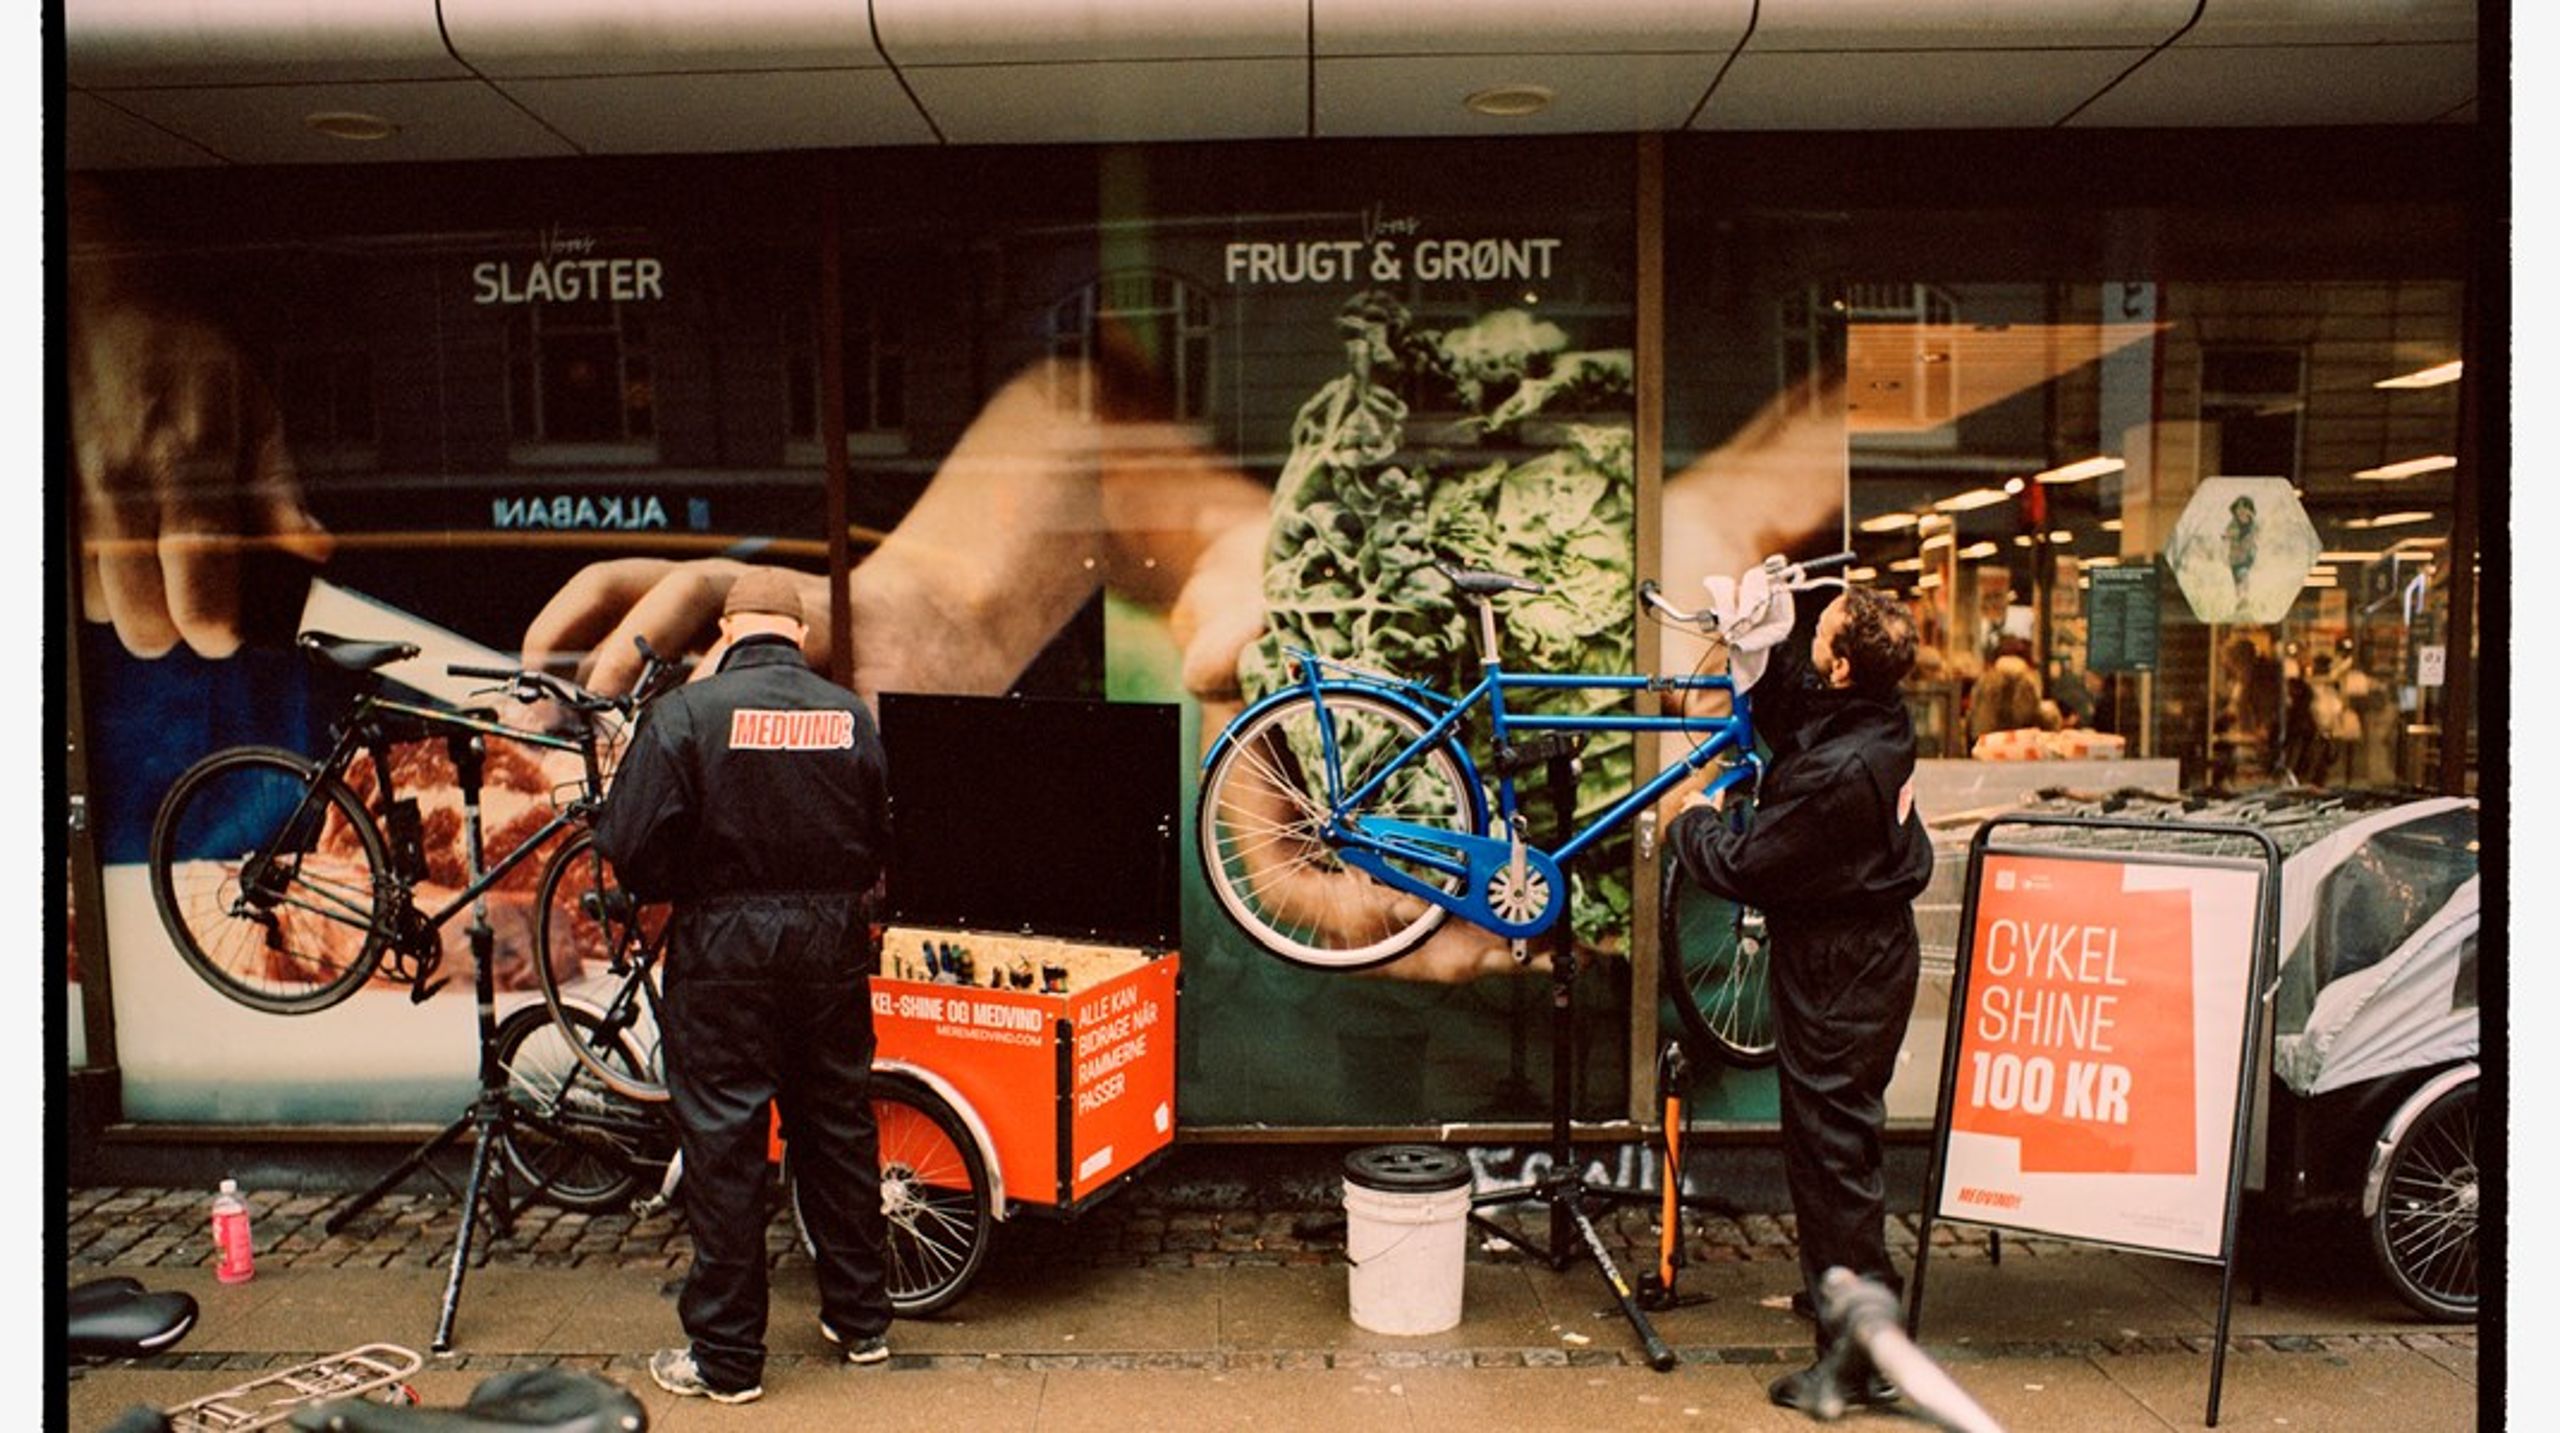 Hos Medvind arbejder frijobbere med cykelreparation på deres egne præmisser, skriver Henrik Smedegaard Mortensen.